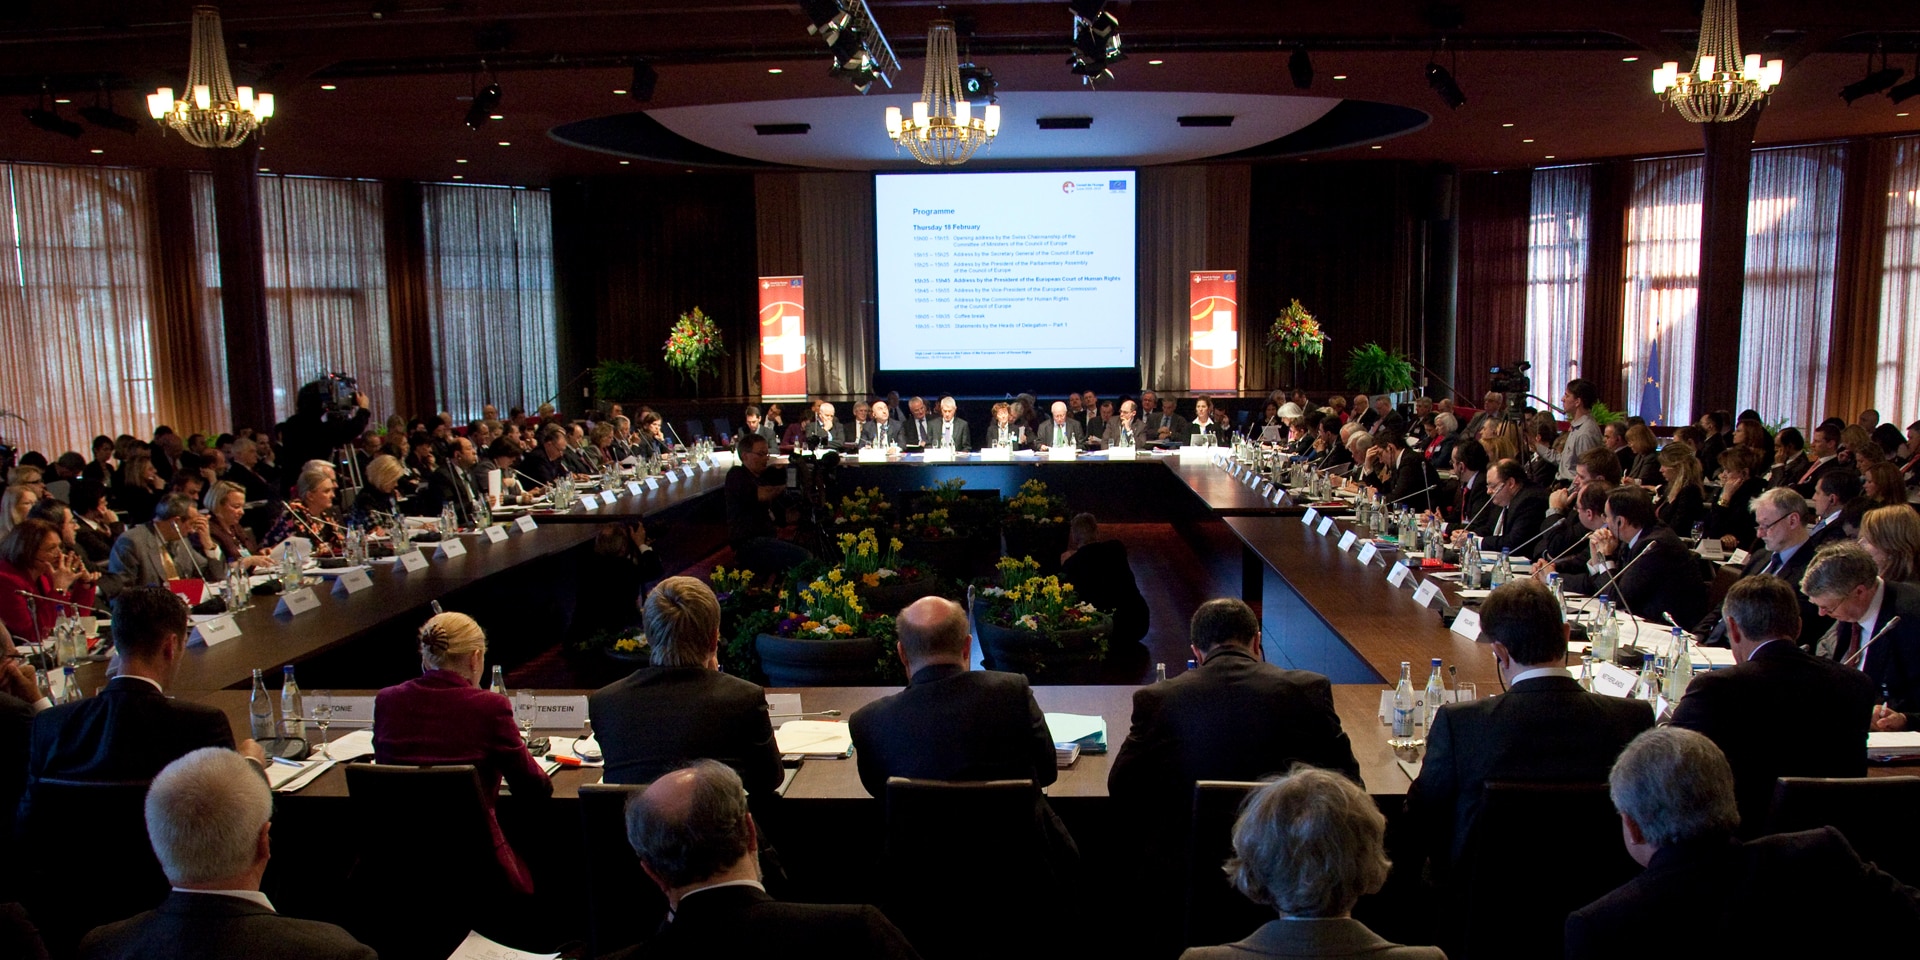 Das Foto stammt von der Ministerkonferenz des Europarates im Februar 2010 in Interlaken: Es zeigt einen mit Teilnehmenden randvollen Saal.